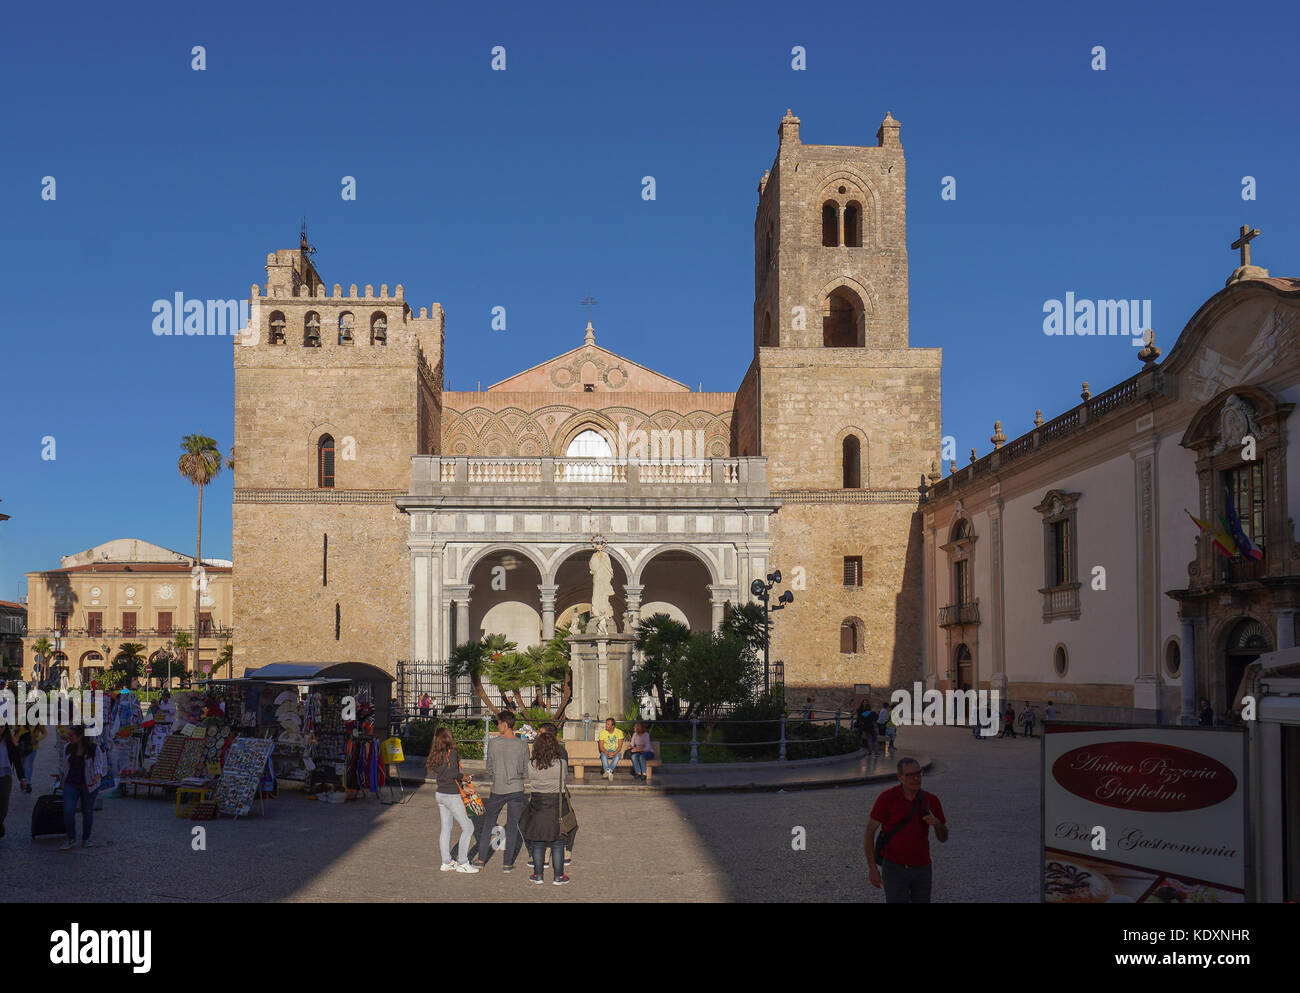 La catedral de Monreale, uno de los mayores ejemplos de arquitectura normanda. A partir de una serie de fotos de viaje en Sicilia, Italia. foto Fecha: jueves Foto de stock